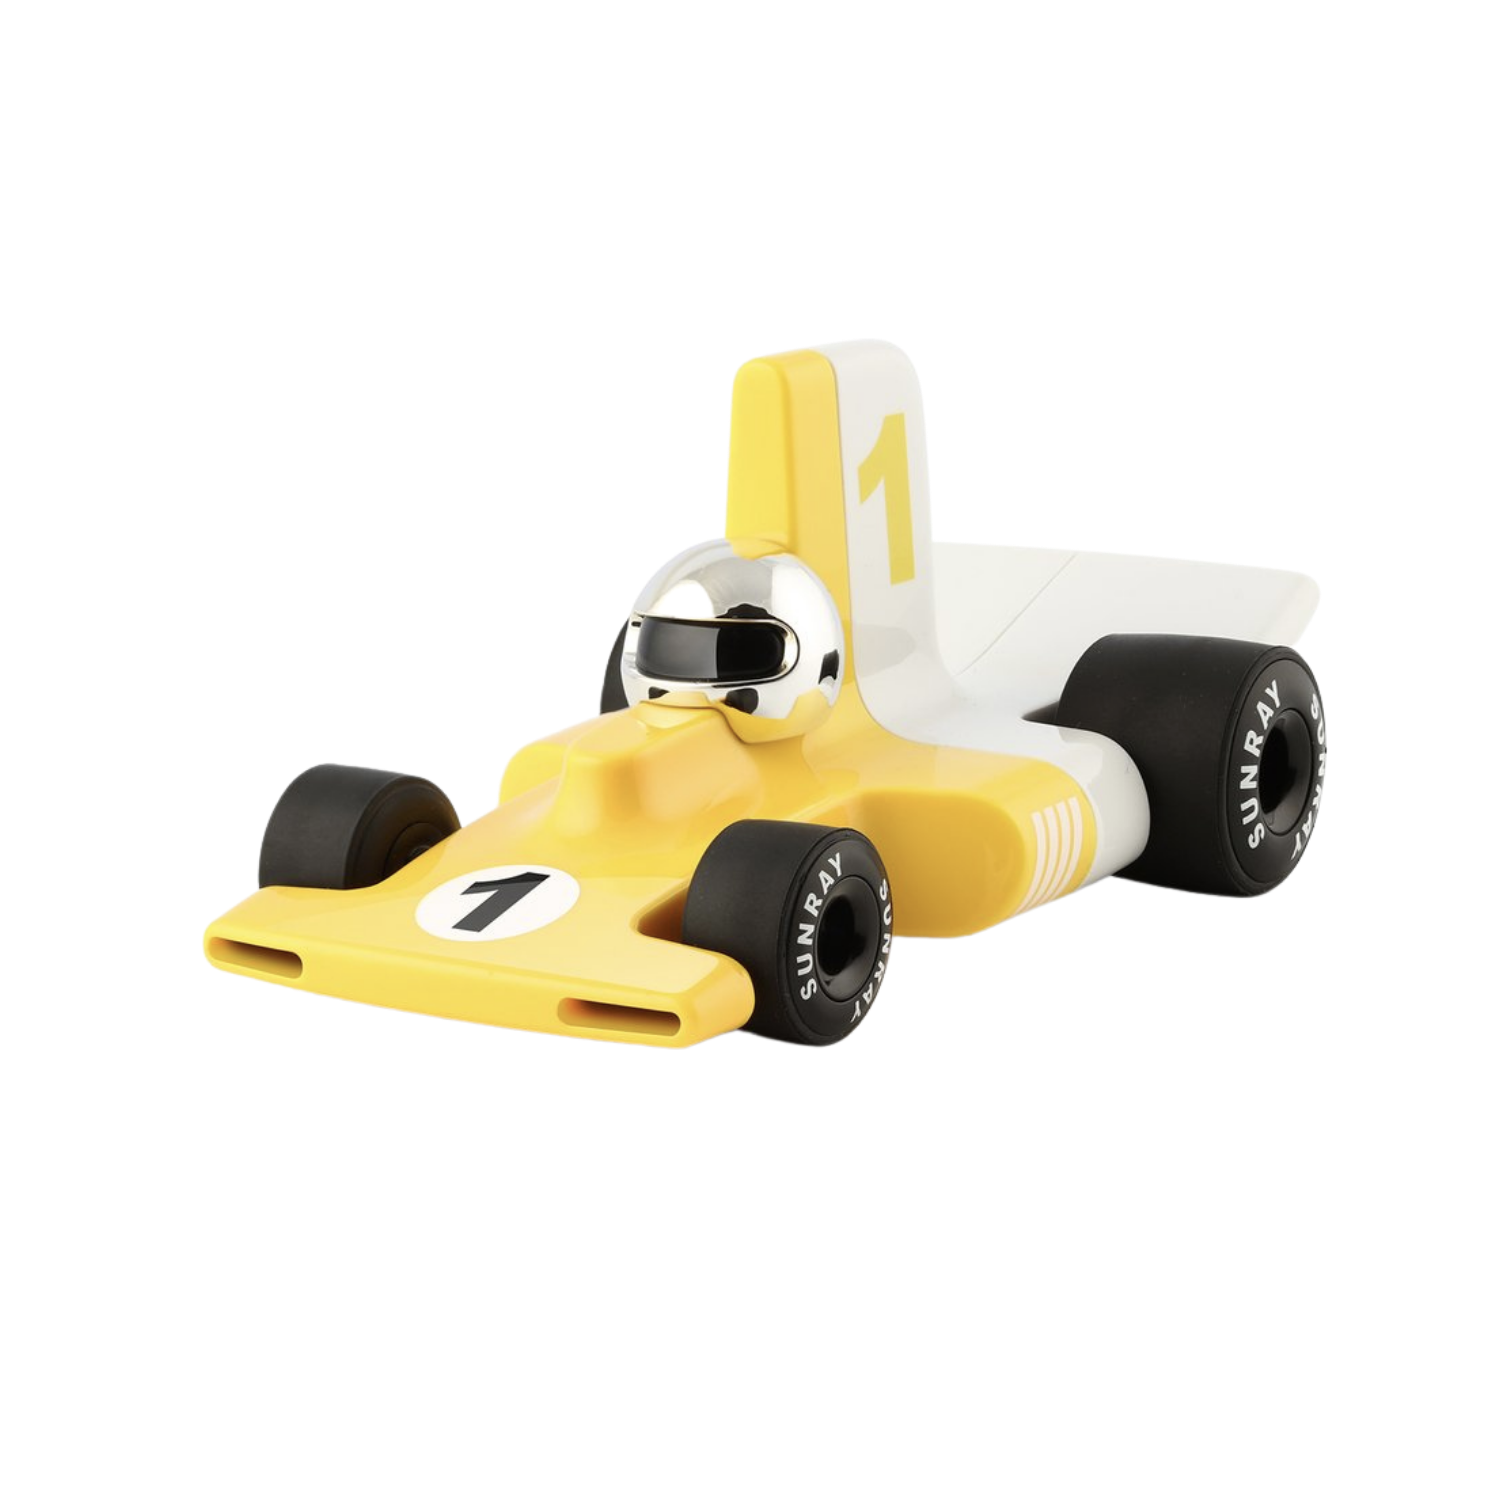 voiture verve velocita jaune collection playforever jouet